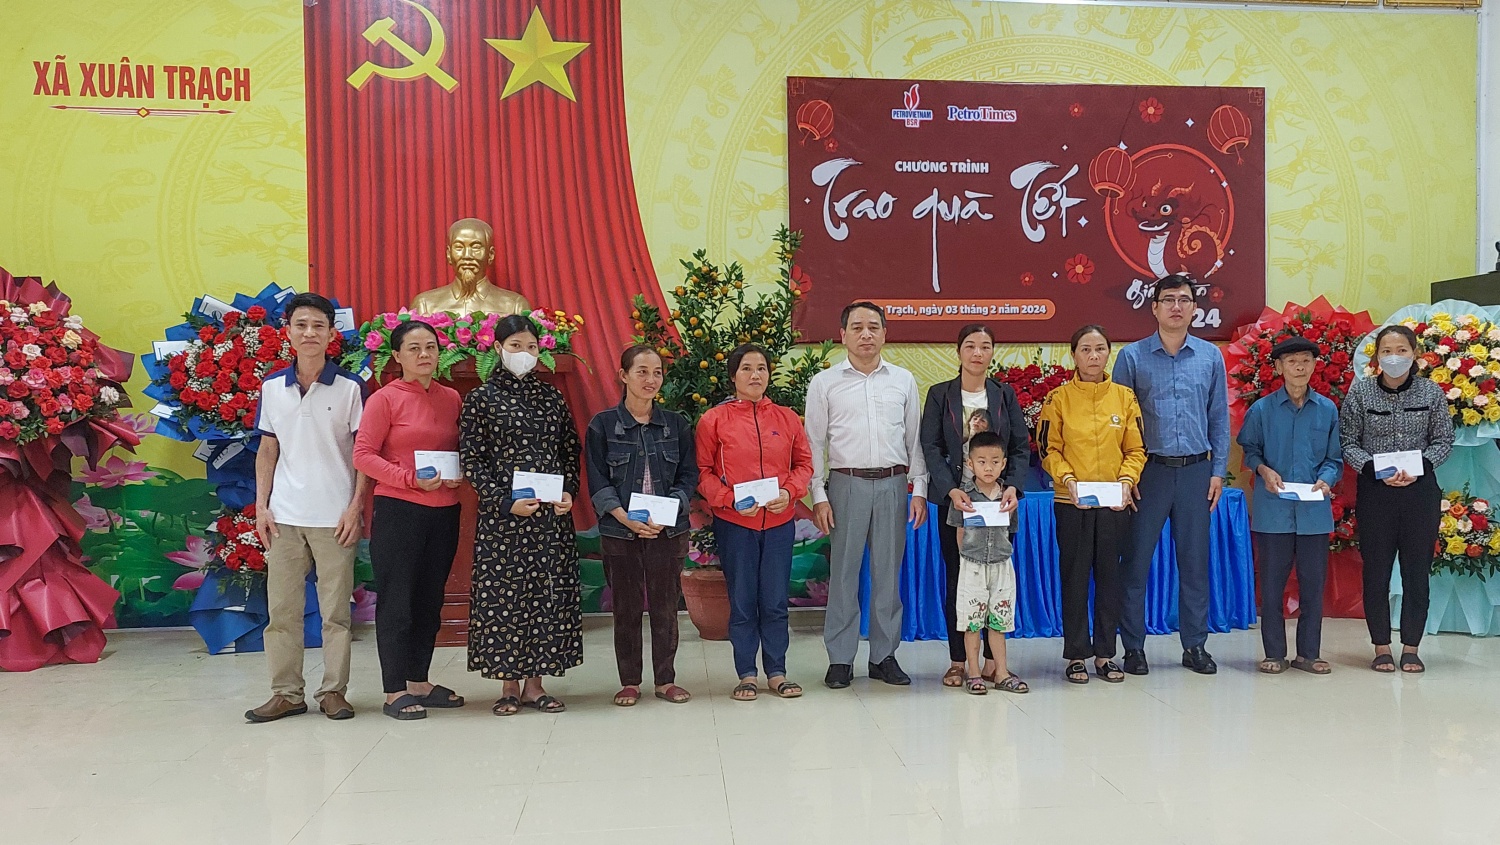 Chương trình “Trao quà Tết” của Tạp chí Năng lượng Mới và BSR đến với bà con vùng núi tỉnh Quảng Bình